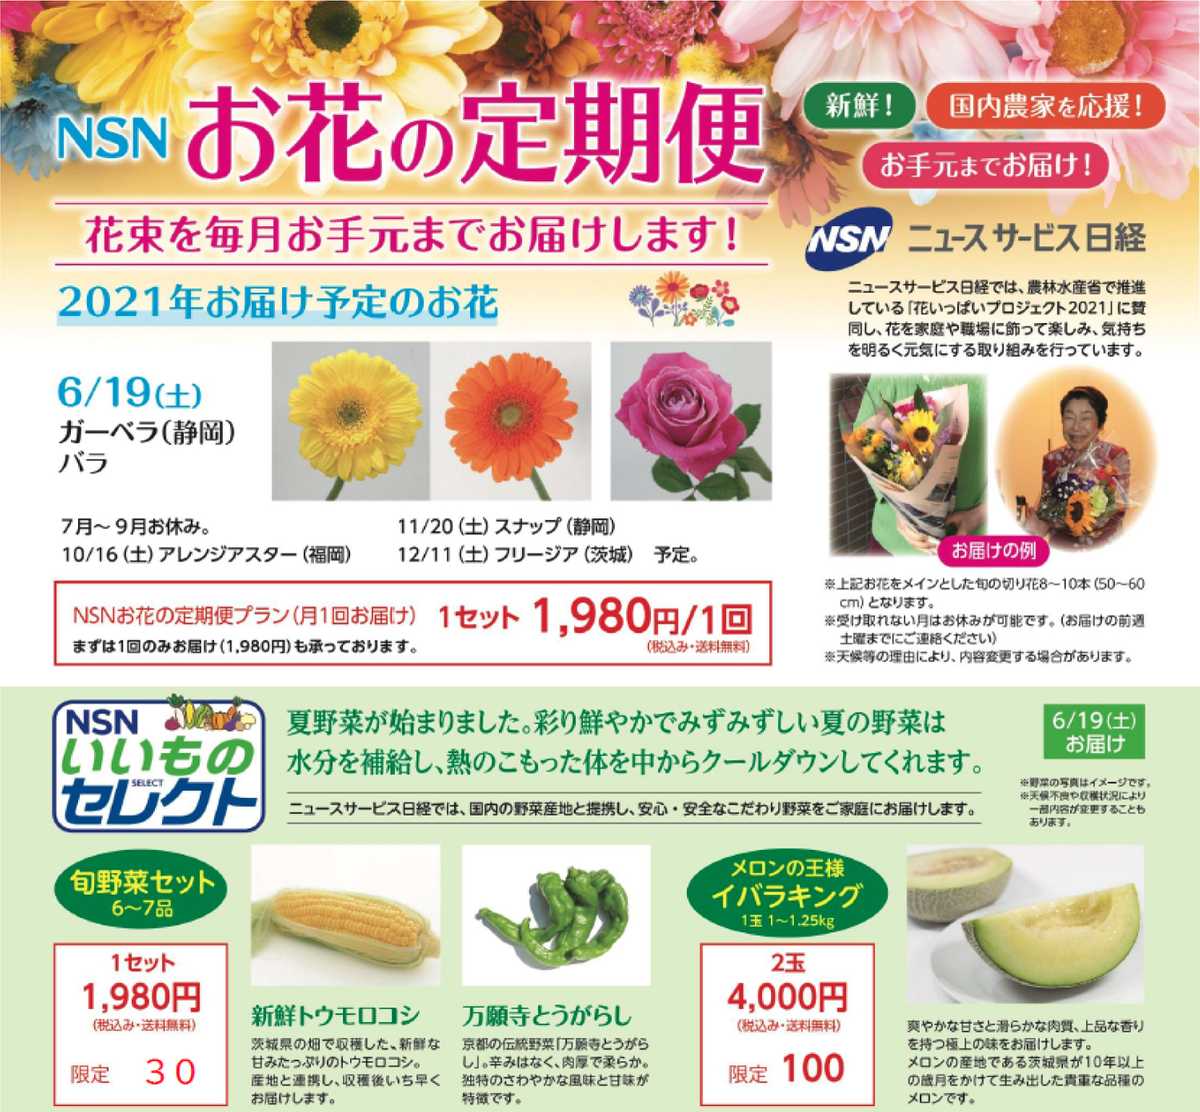 お花の定期便ー６月は ガーベラ 花言葉は 希望 さらに旬野菜セットも販売いたします ニュースサービス日経東銀座